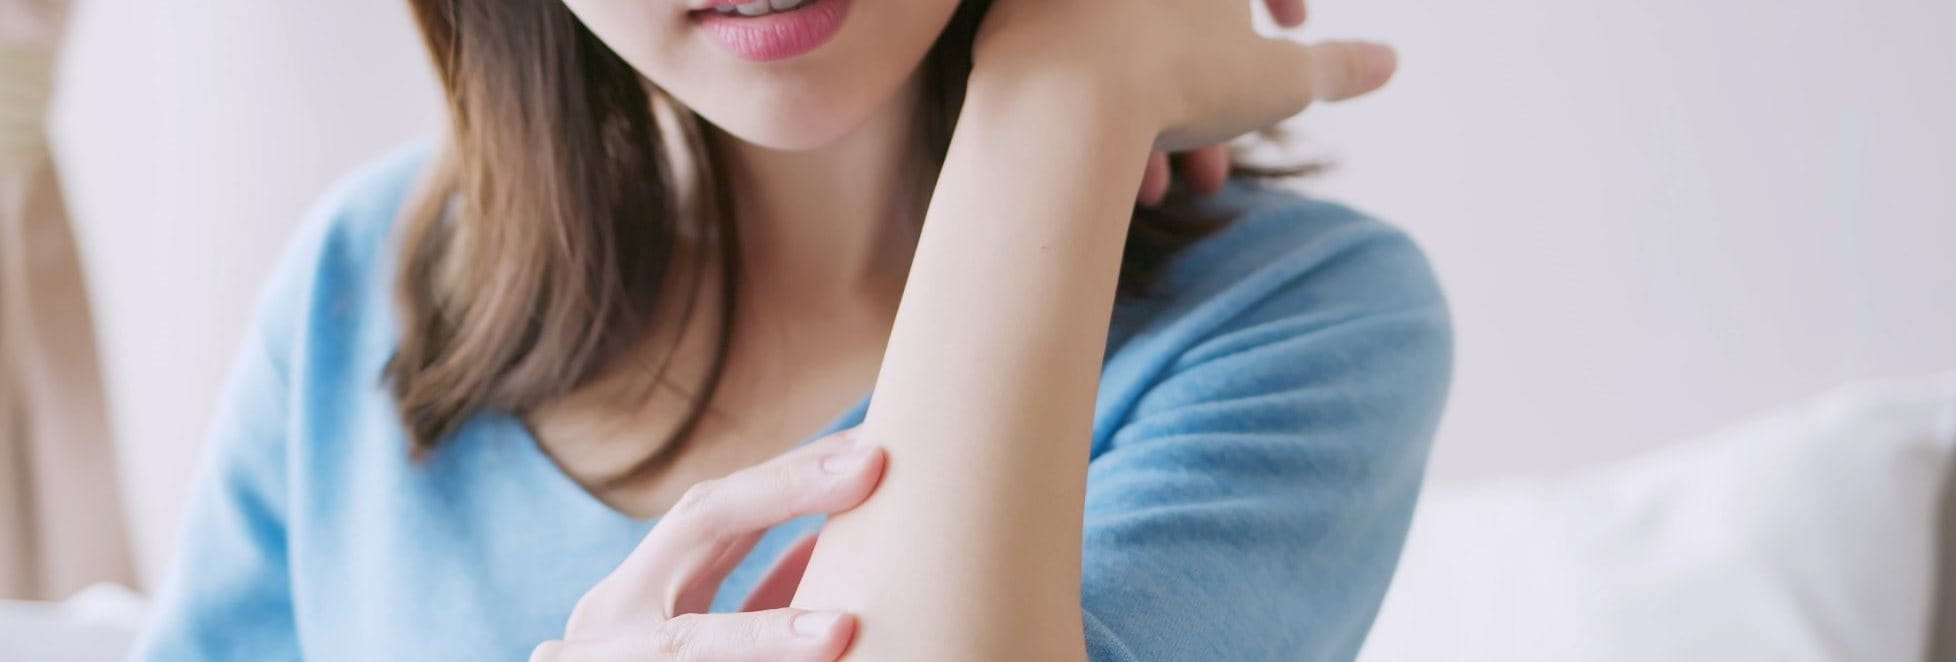 Frau untersucht ihren Arm auf Ekzeme